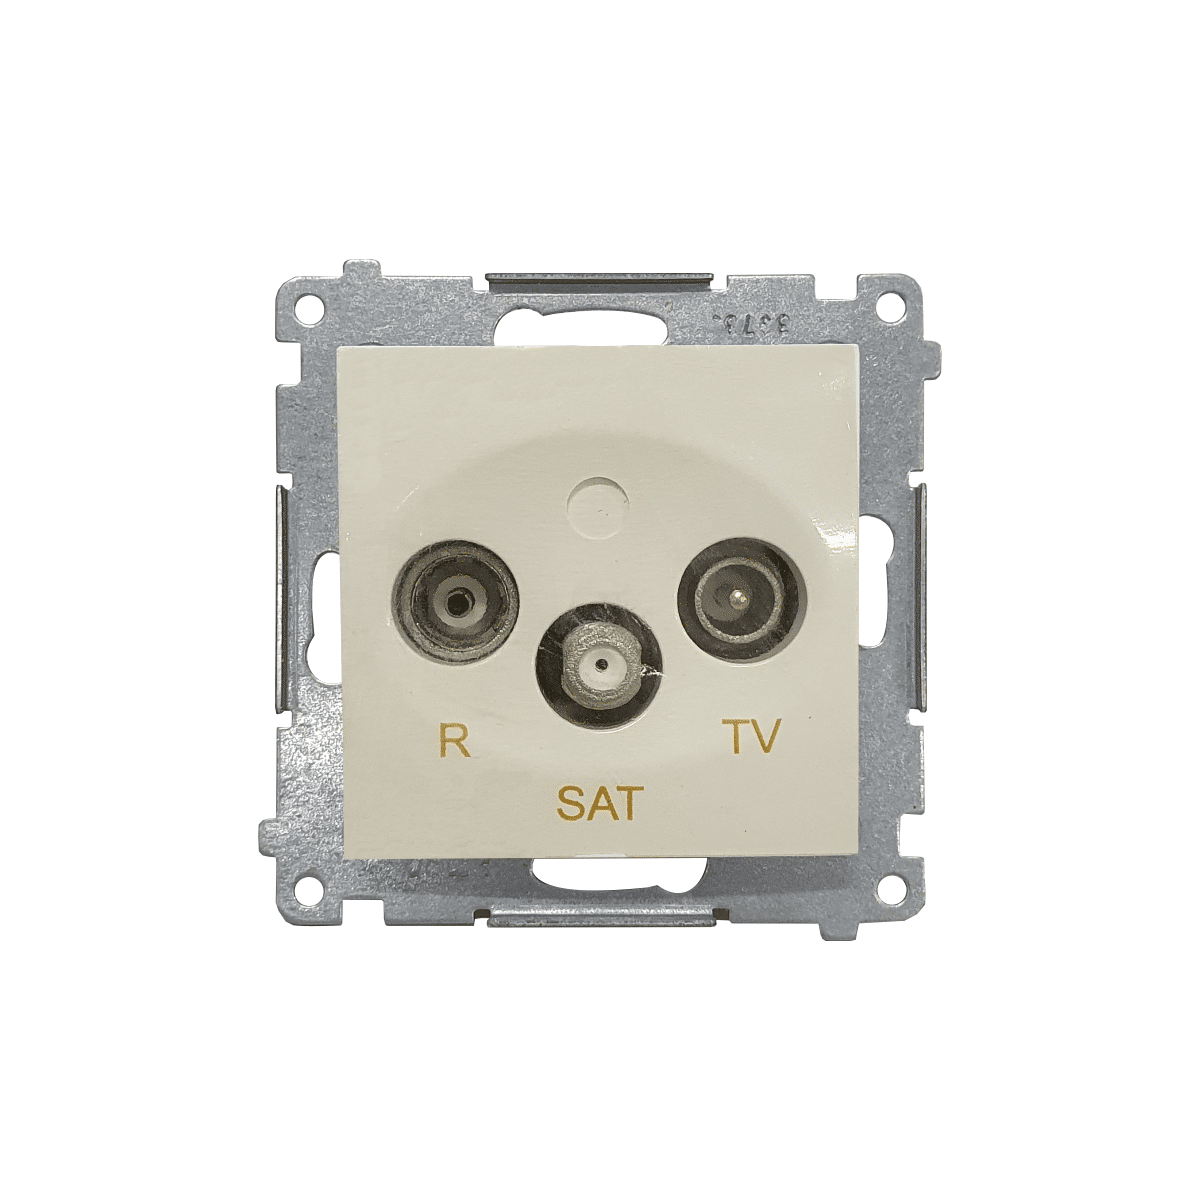 Gniazdo antenowe R-TV-SAT końcowe / zakończeniowe DASK.01/41 kremowy SIMON 54